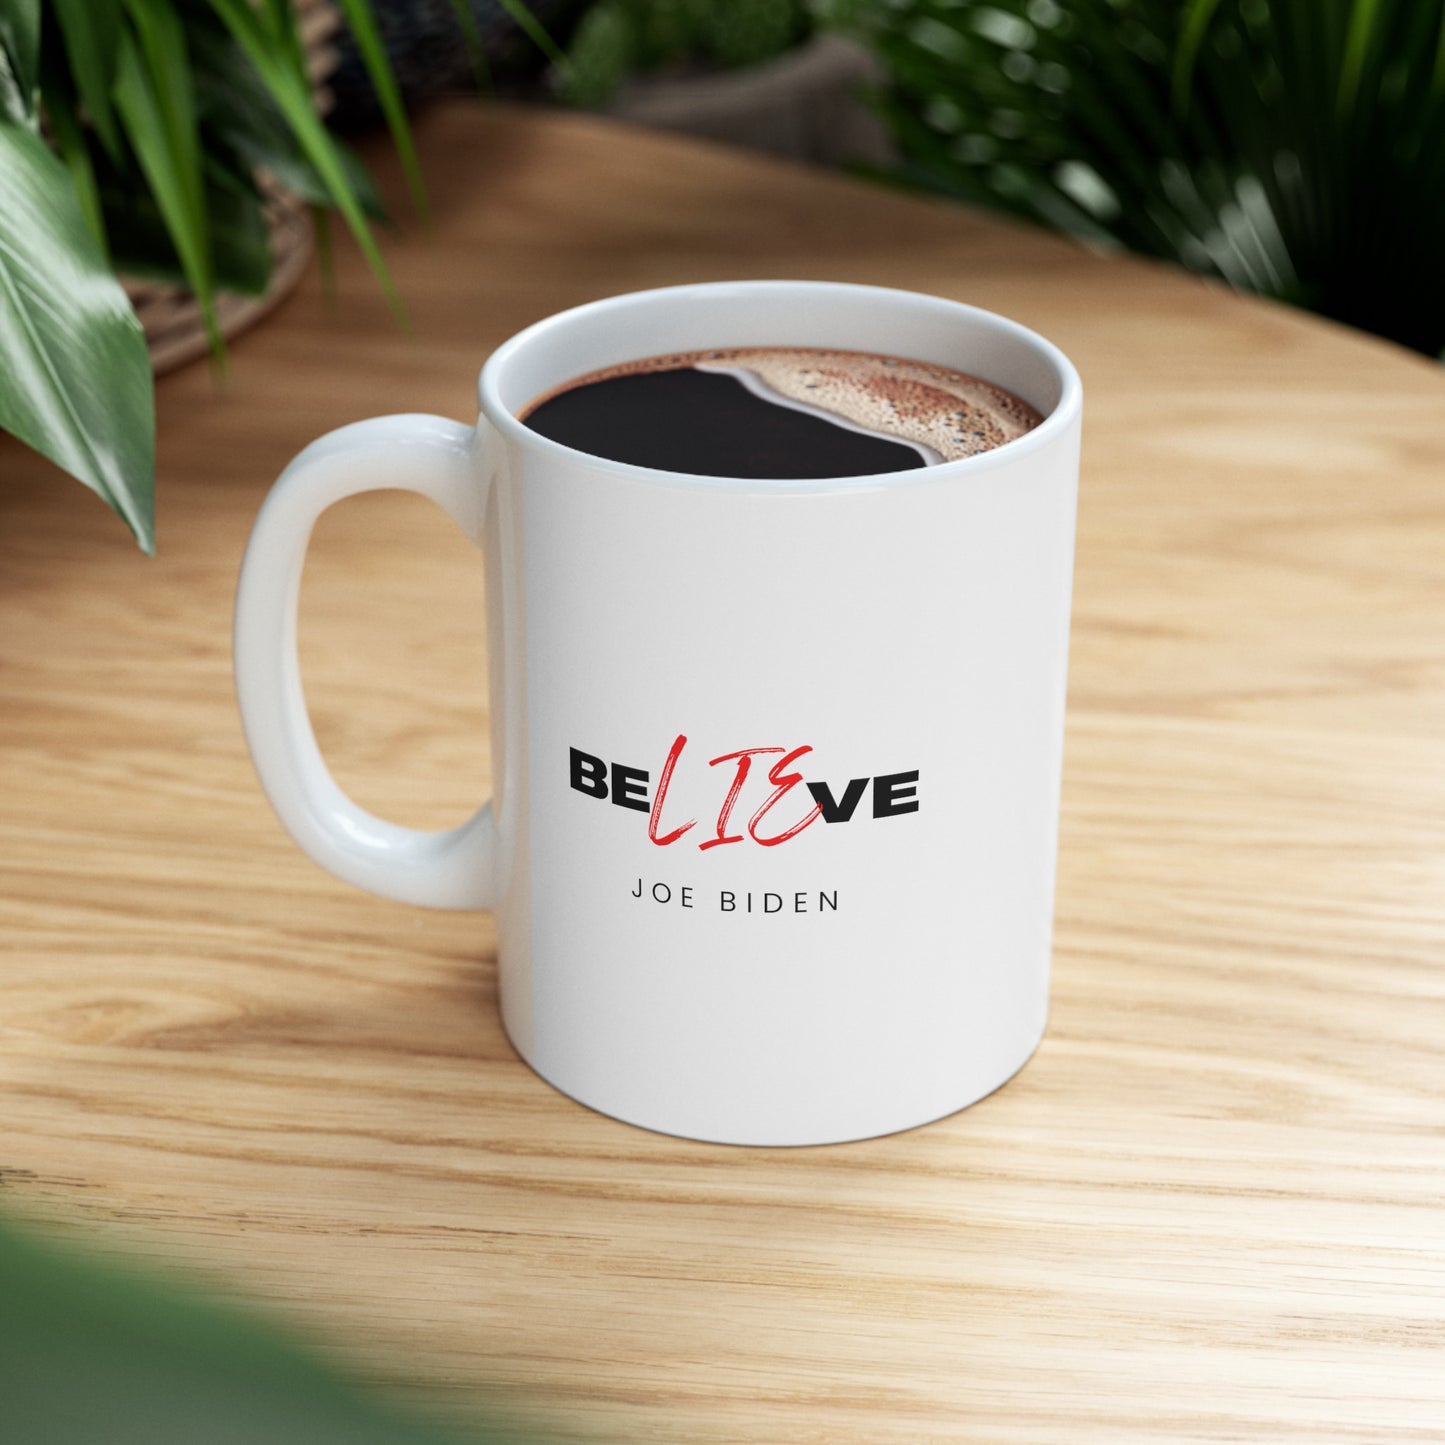 BeLIEve Joe Biden Coffee & Tea Mug